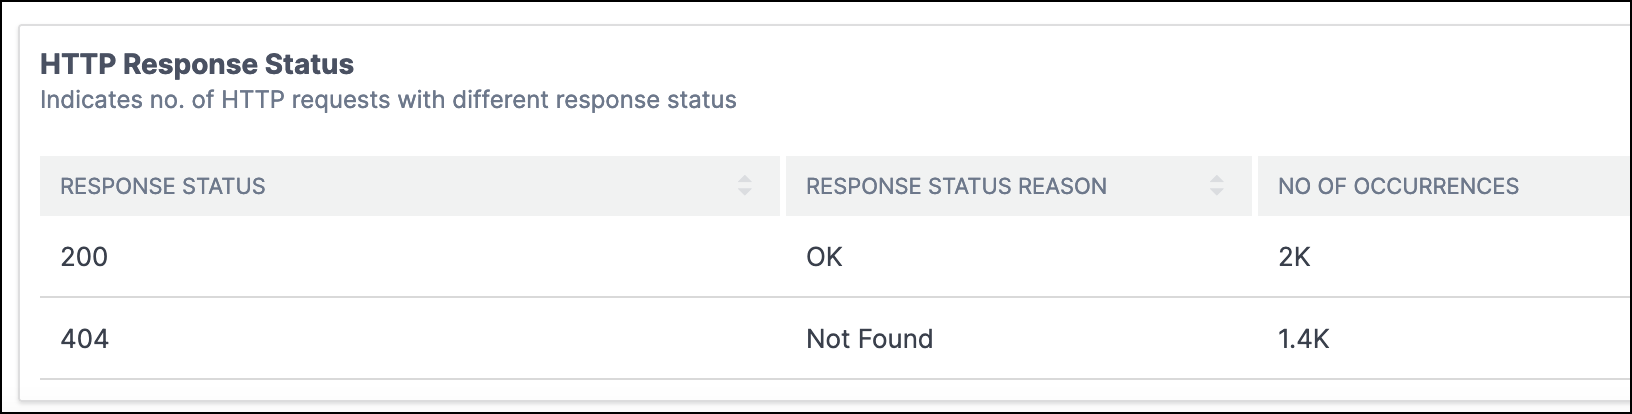 HTTPS response status